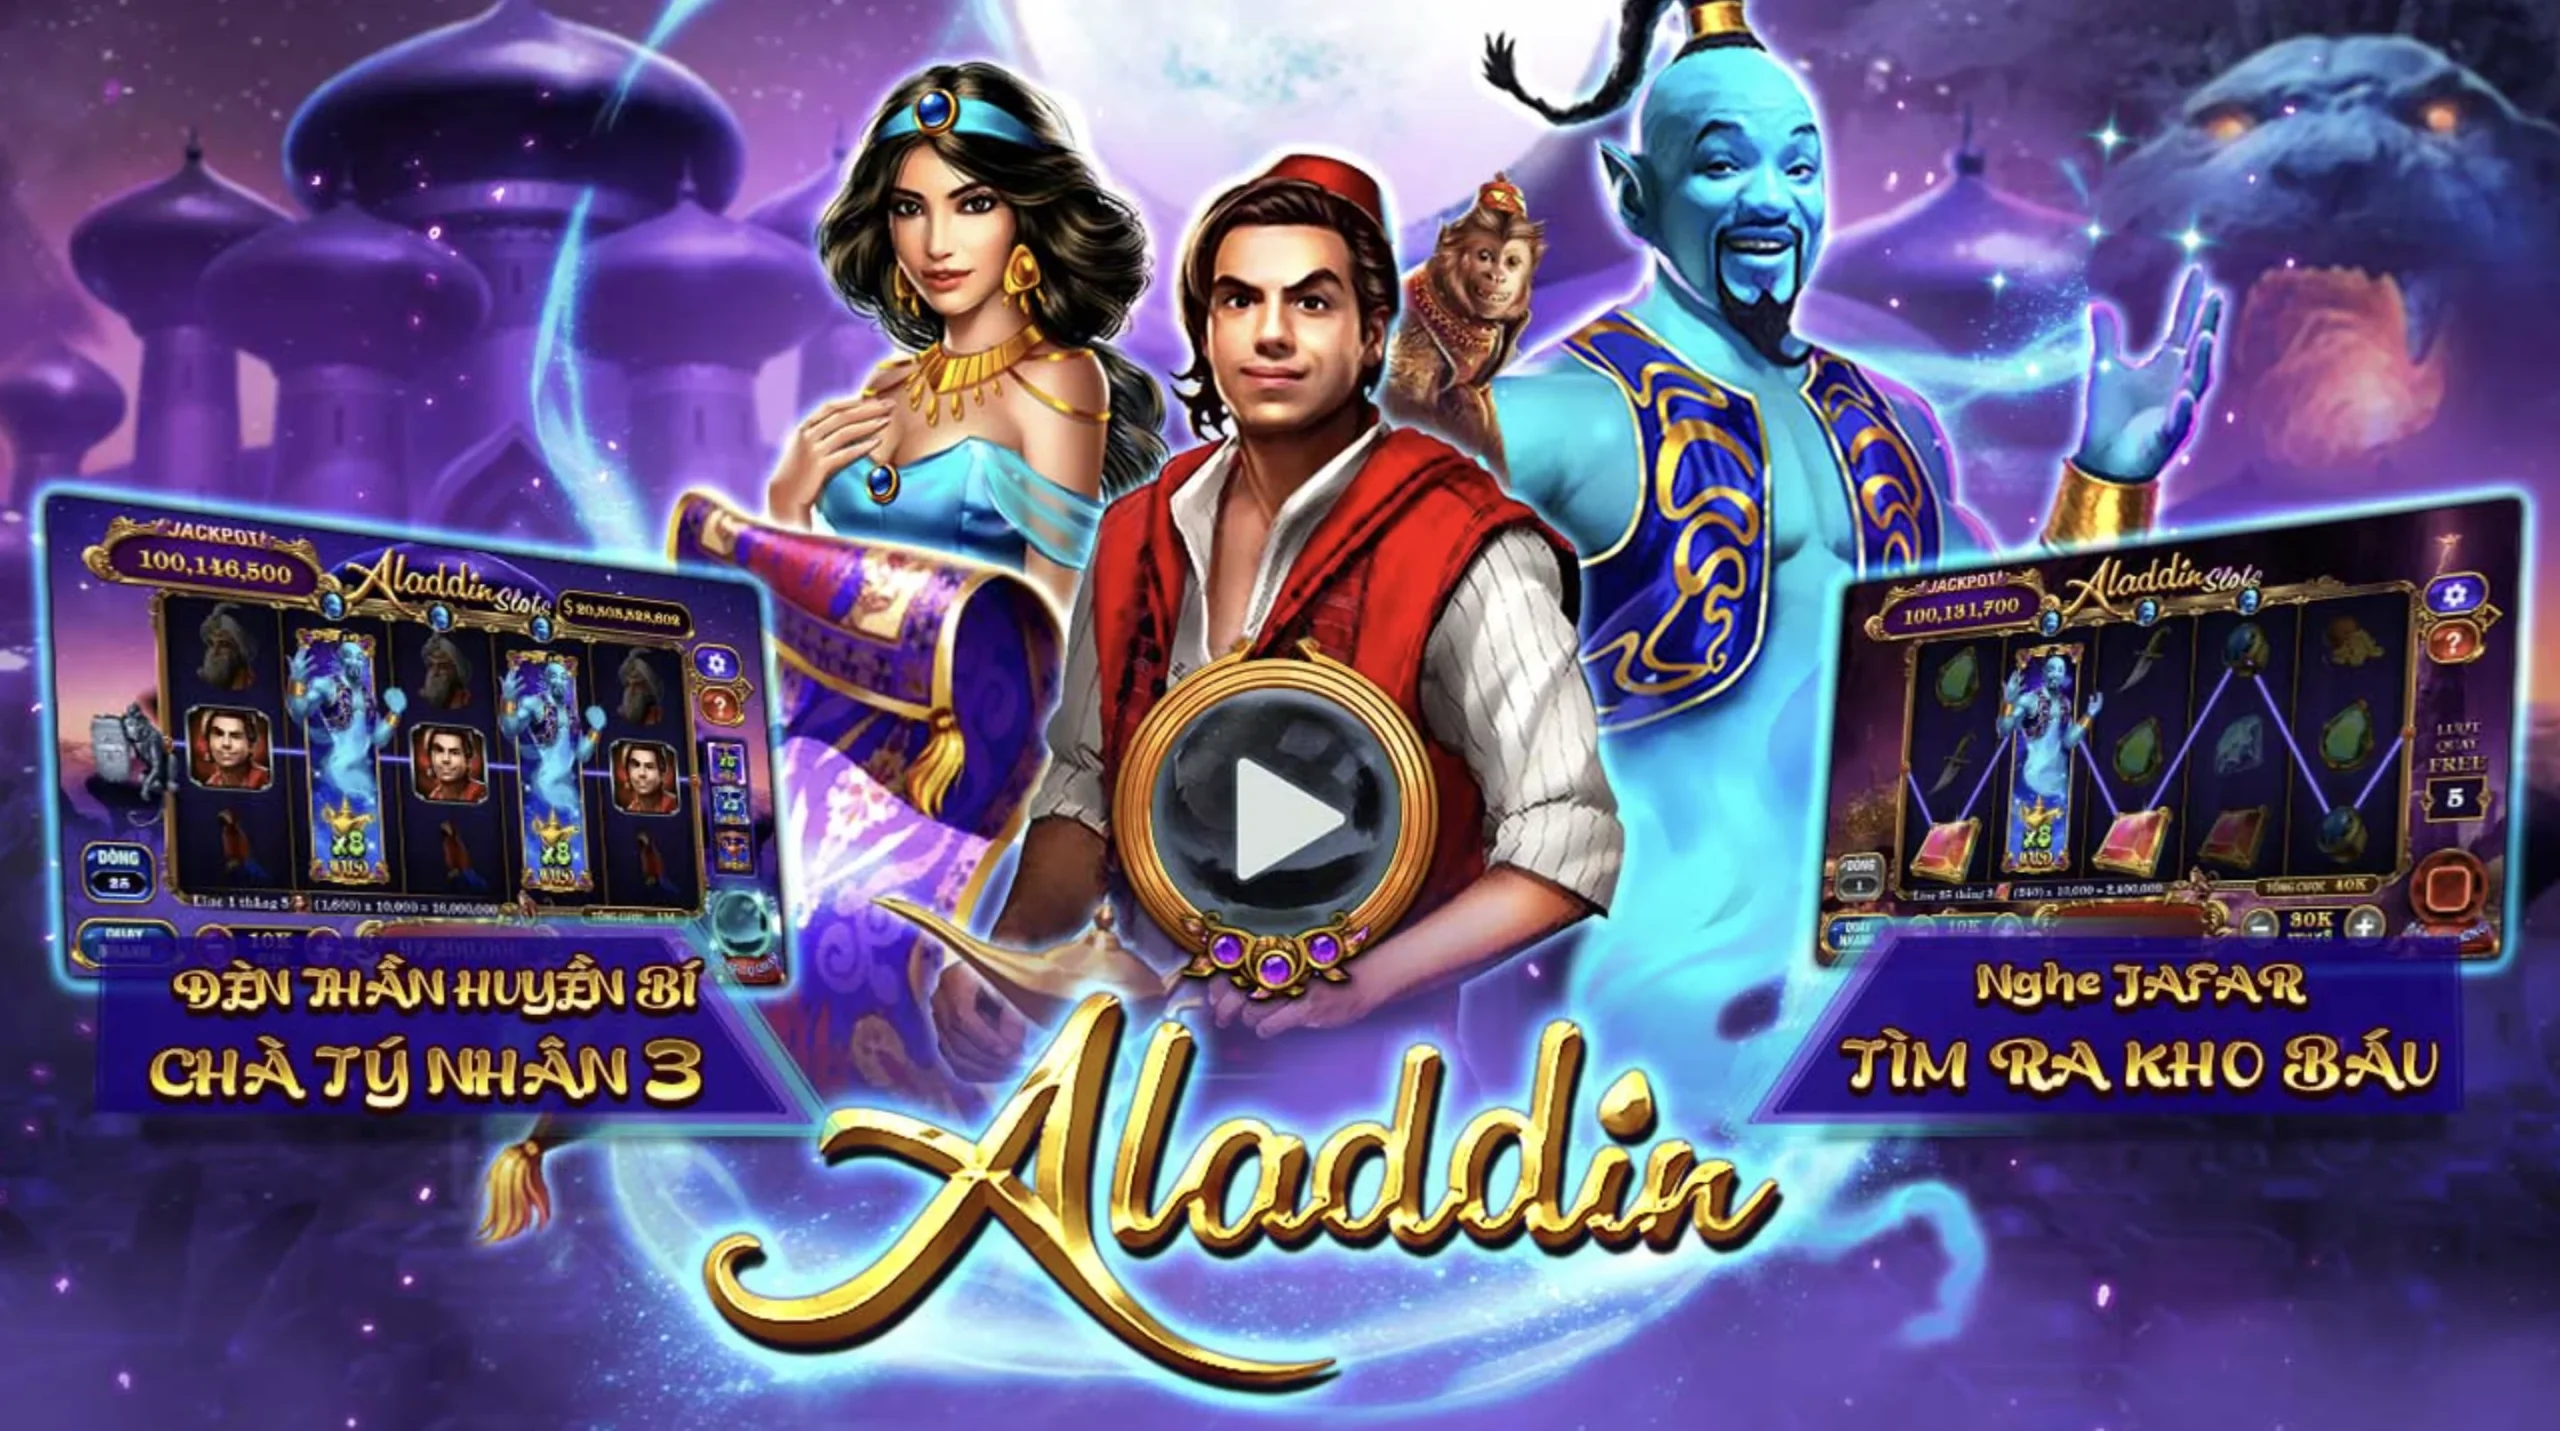 Đặc quyền khi chơi Aladin tại Debet online 